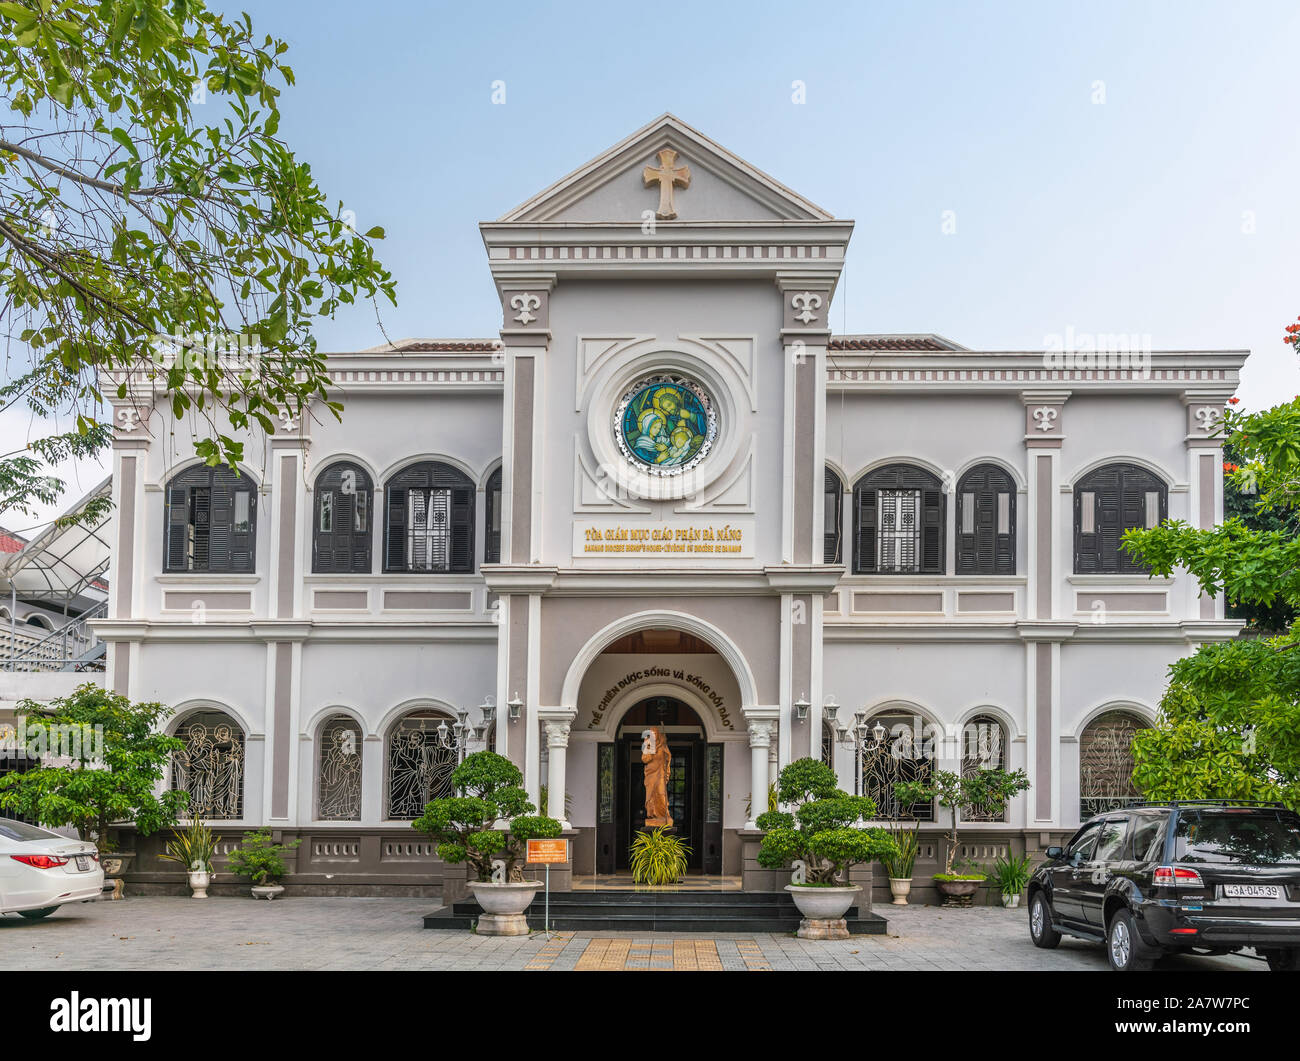 Da nang, Vietnam - 10 mars 2019 : maison de l'évêque catholique du diocèse sous ciel bleu et vert feuillage. Statue de Jésus le sheppa Banque D'Images